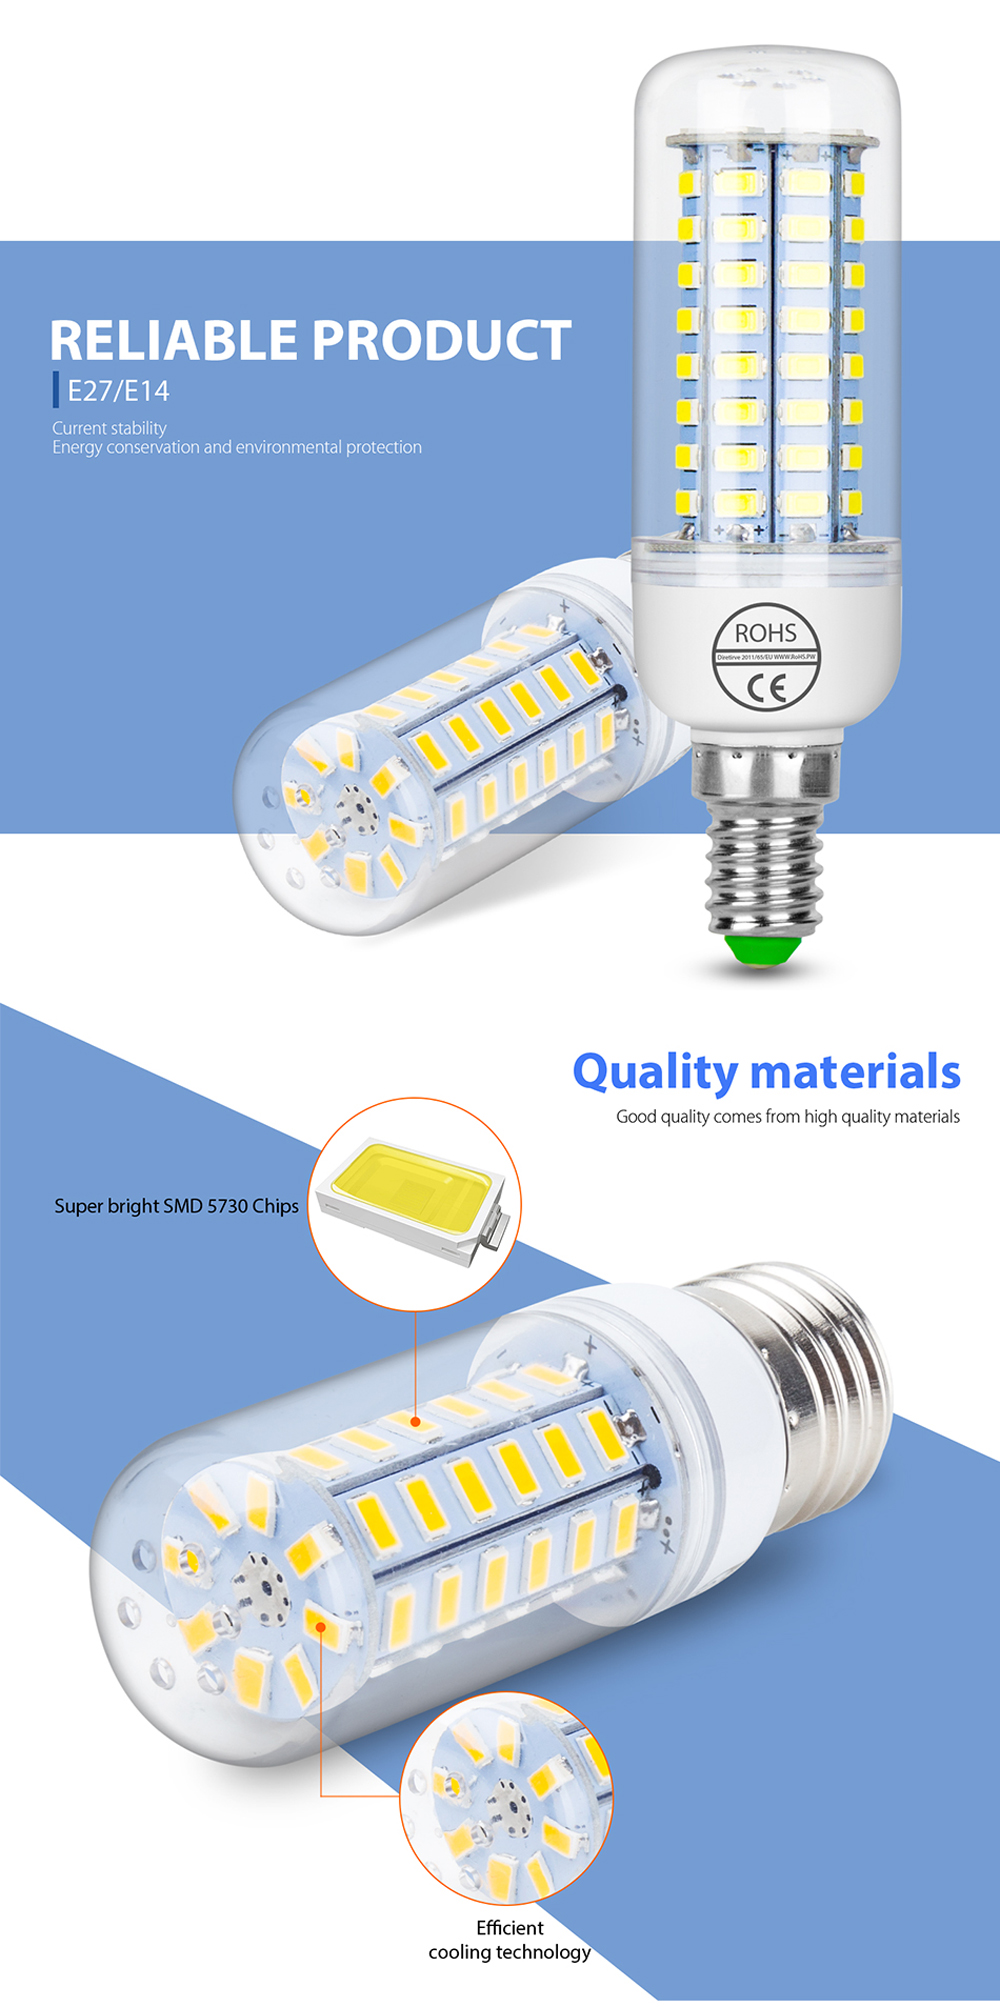 E14 7W LED Corn Bulb Lamp 48-SMD 5730 (AC 220)